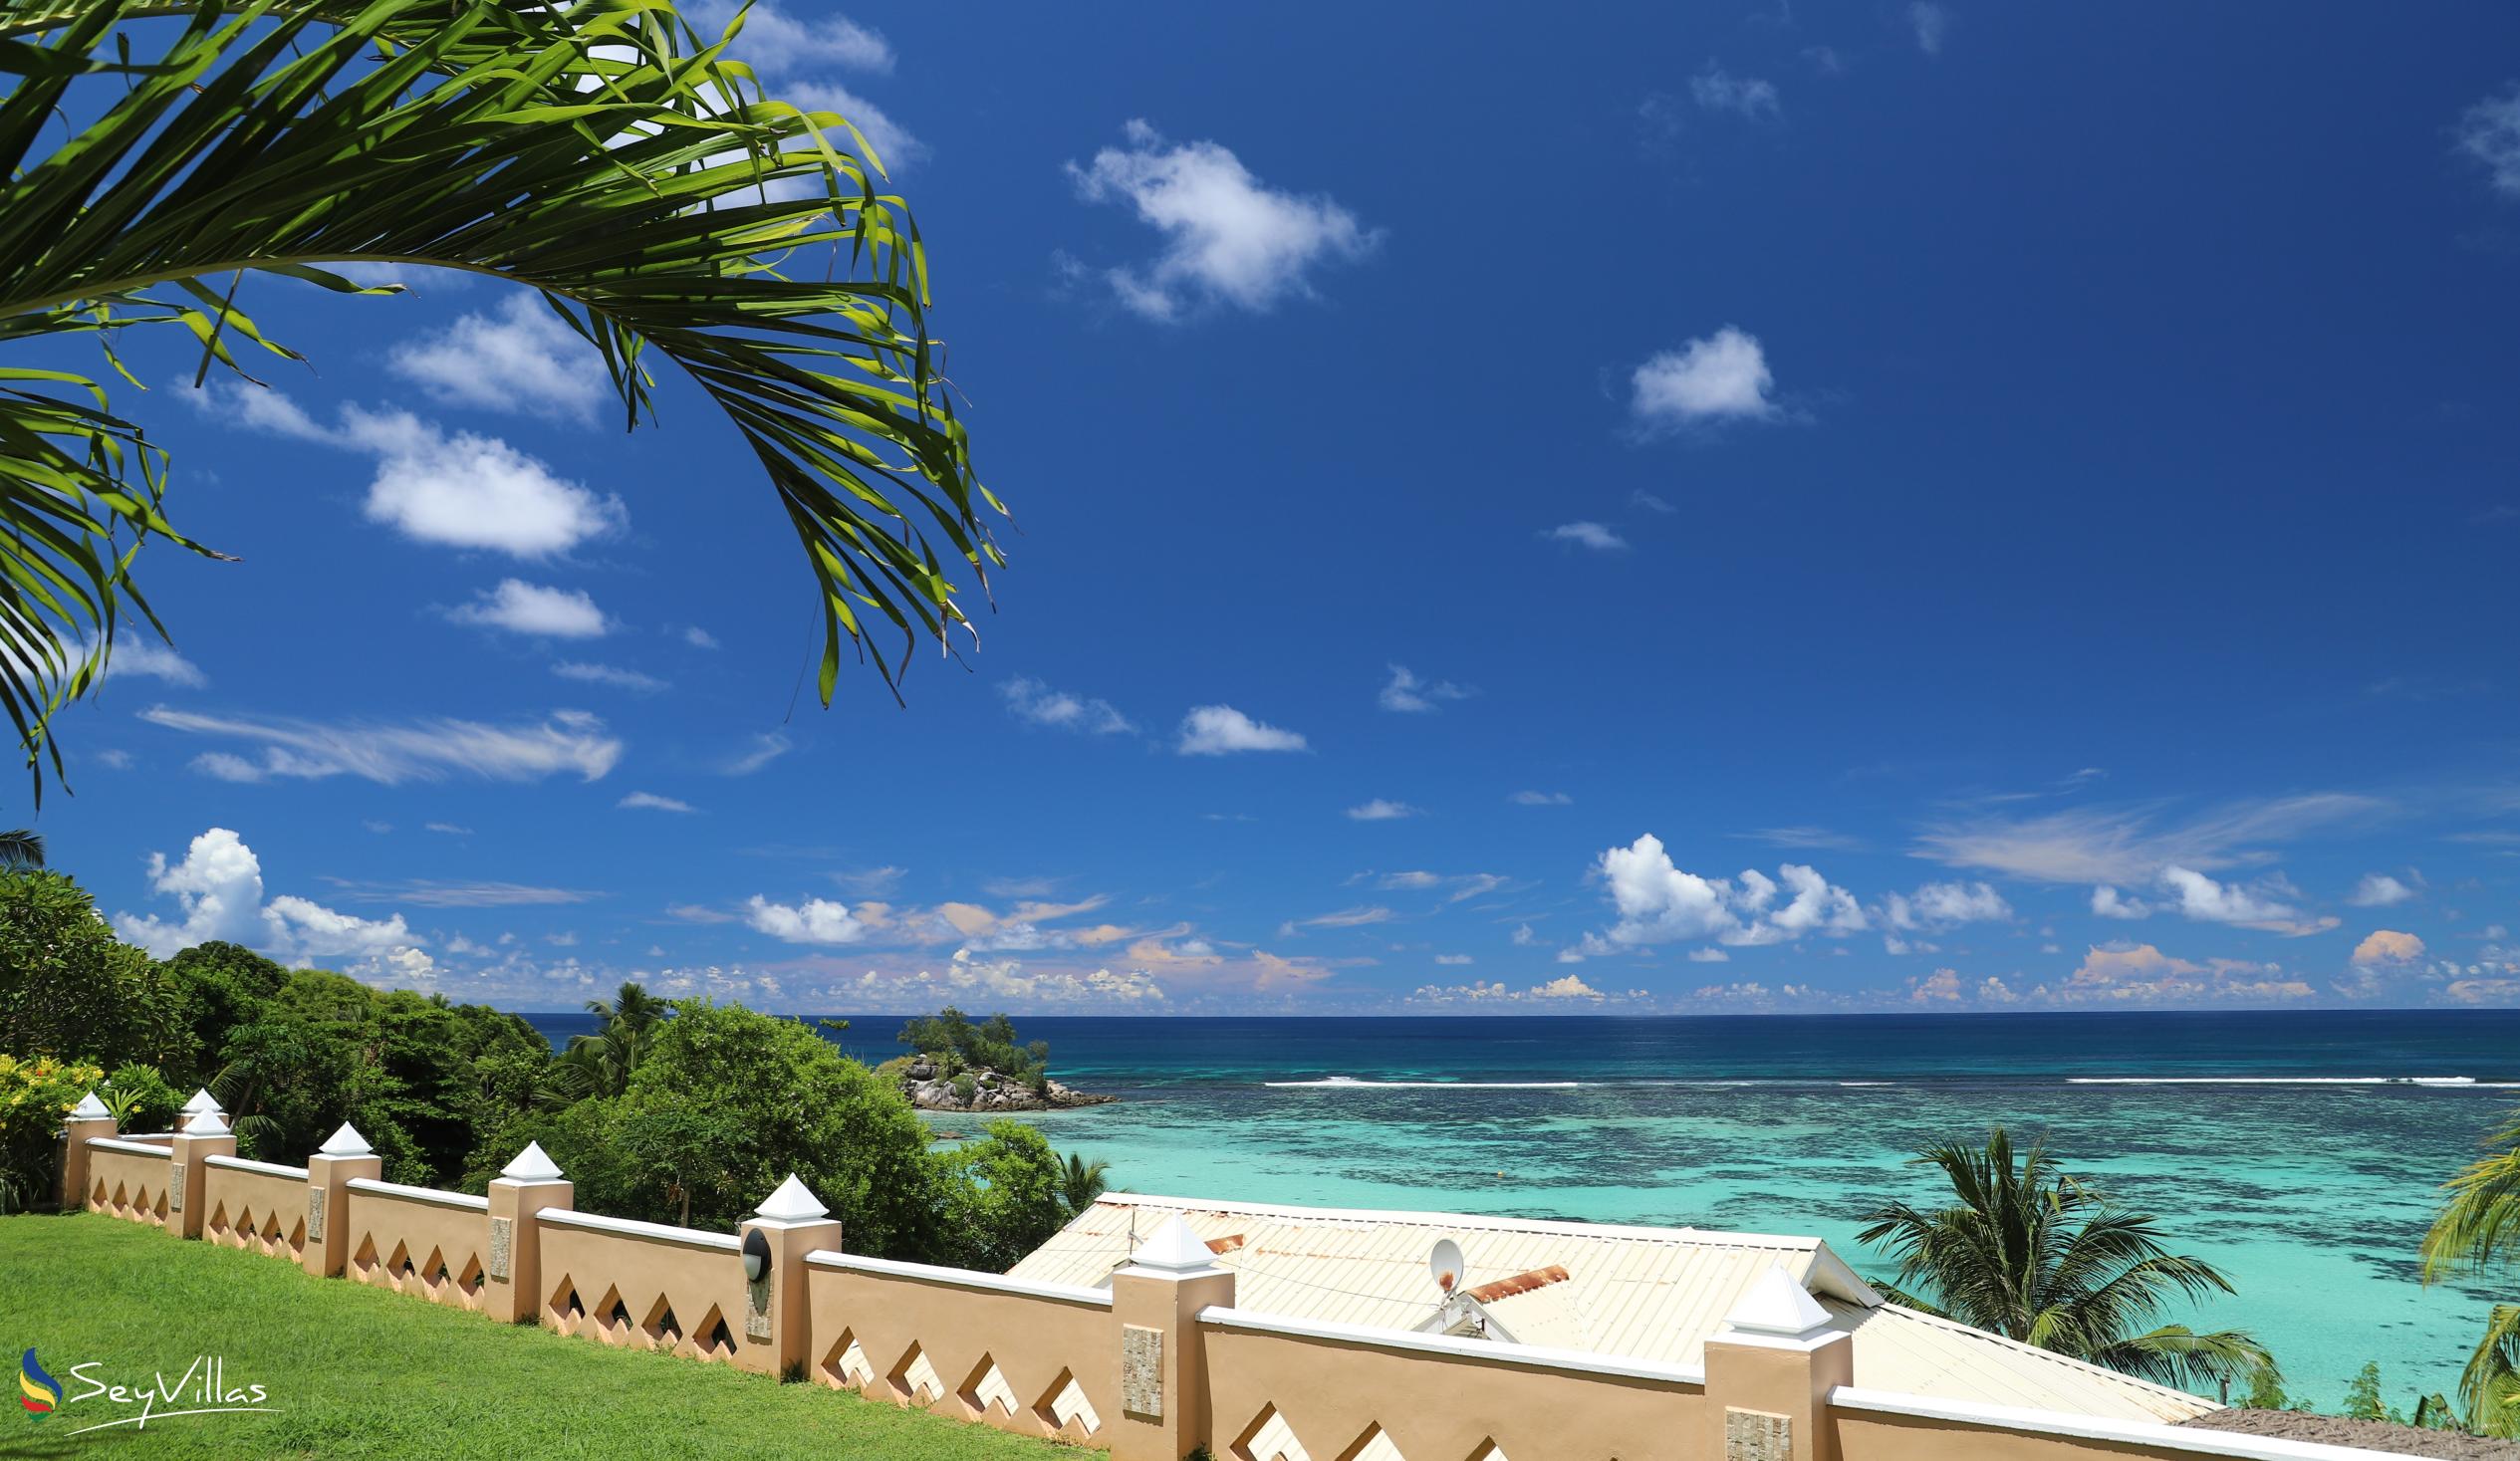 Photo 5: Au Fond de Mer View - Outdoor area - Mahé (Seychelles)